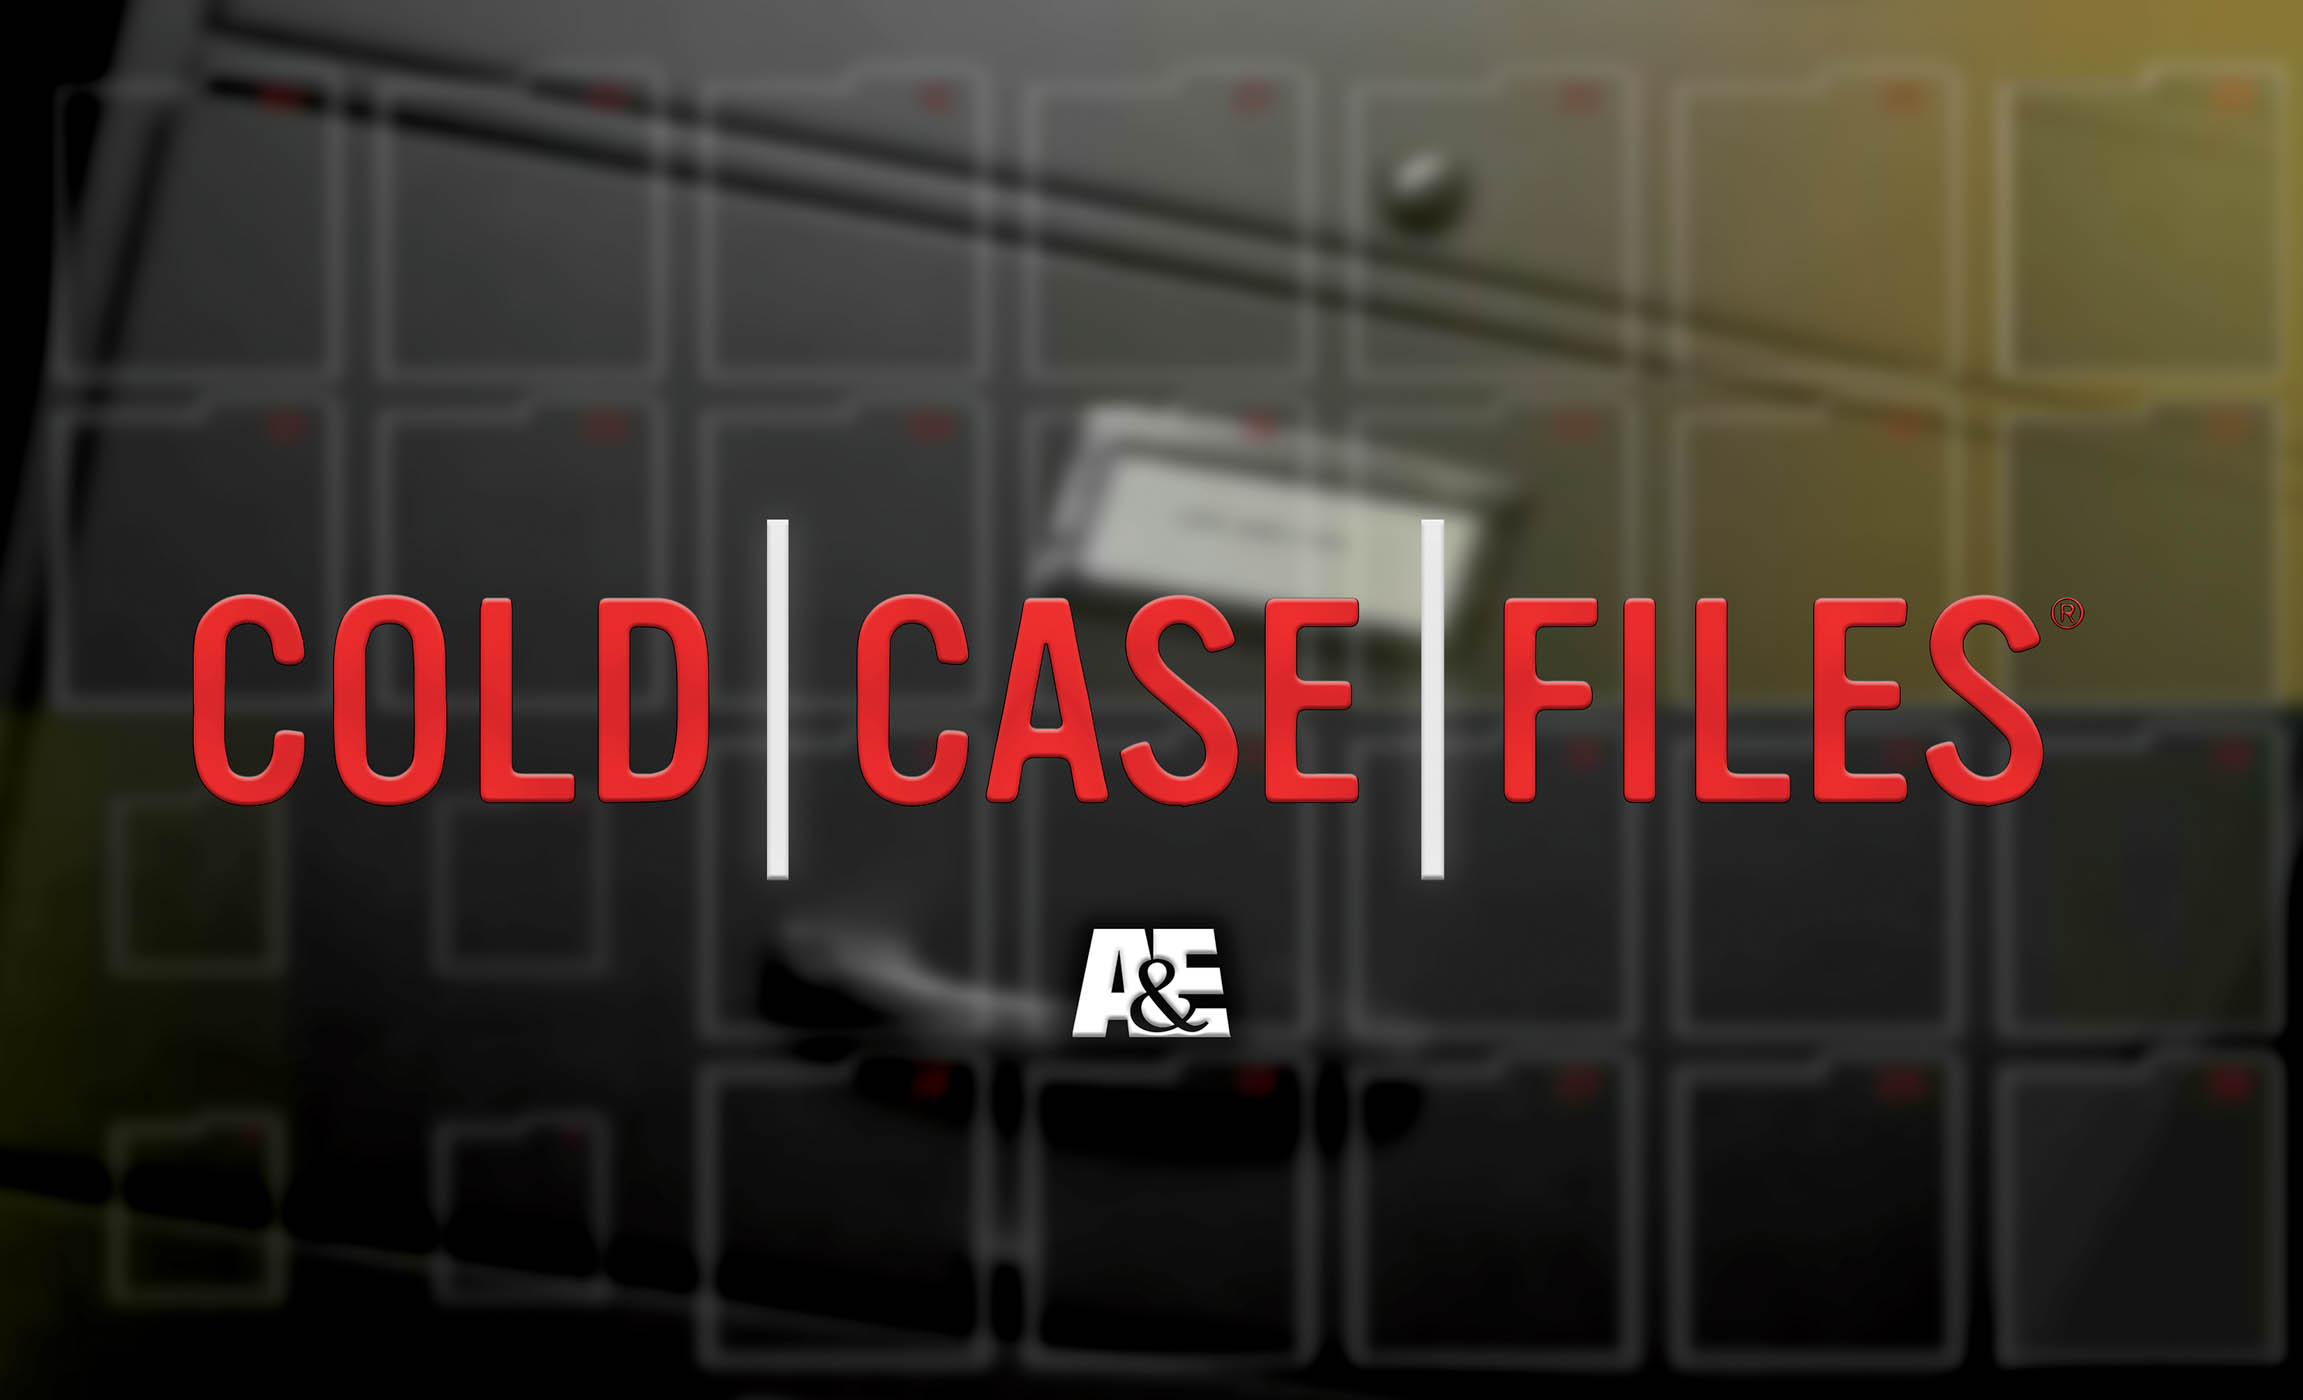 98 Sr2023 12 259 Cold Case Files 300 Dpi